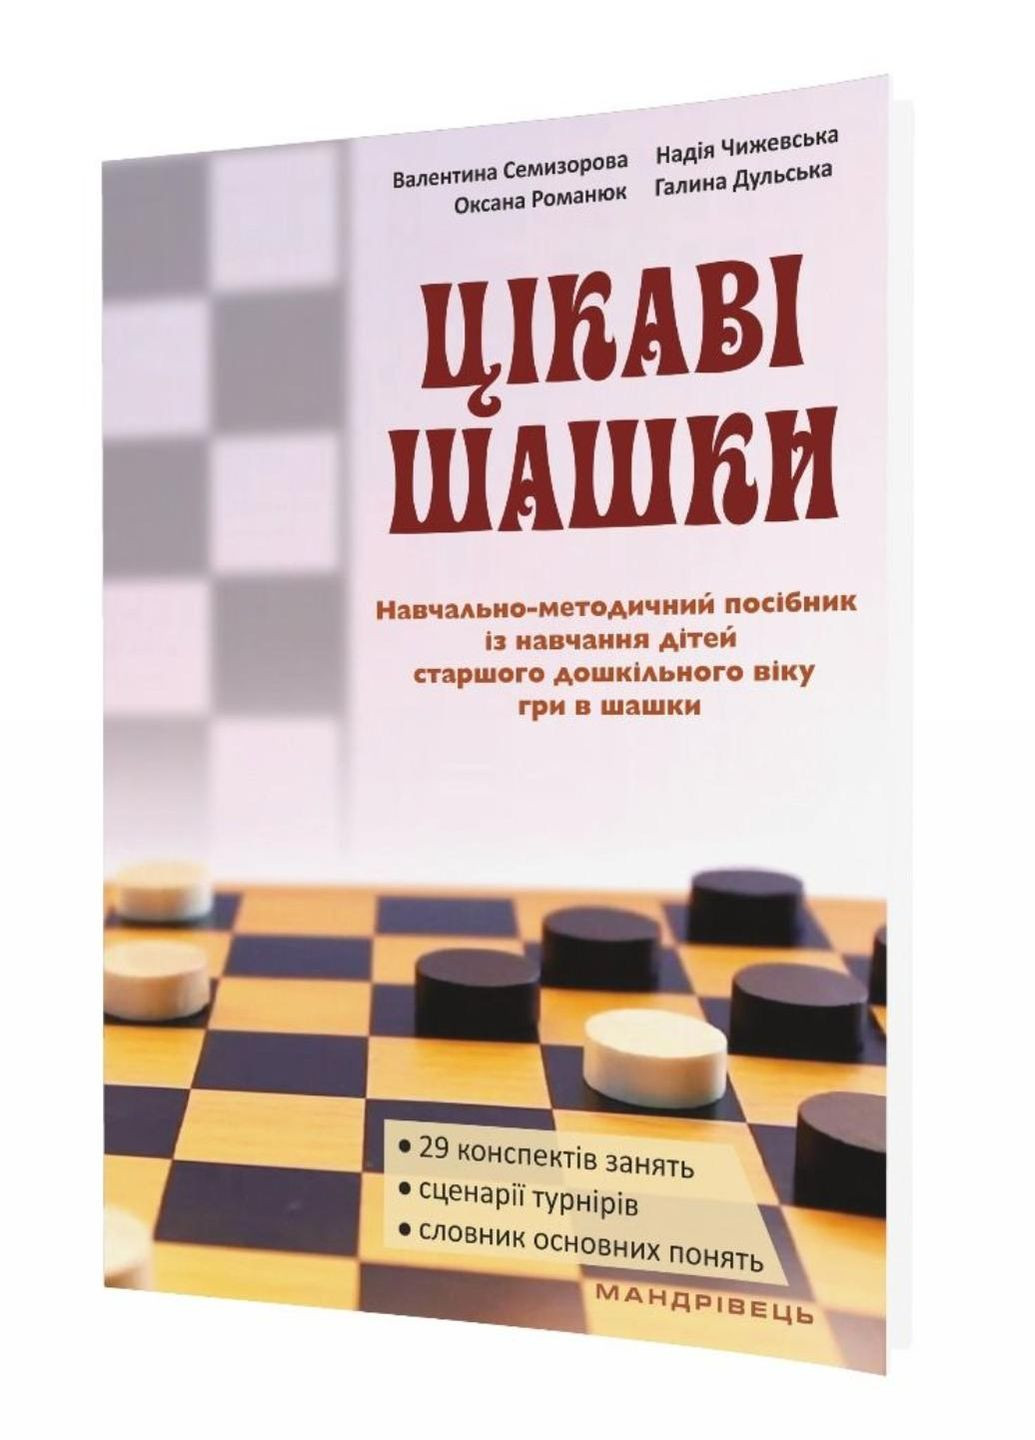 Цікаві шашки : навчально-методичний посібник. Семизорова В., 978-966-944-066-2 Мандрівець (282595992)